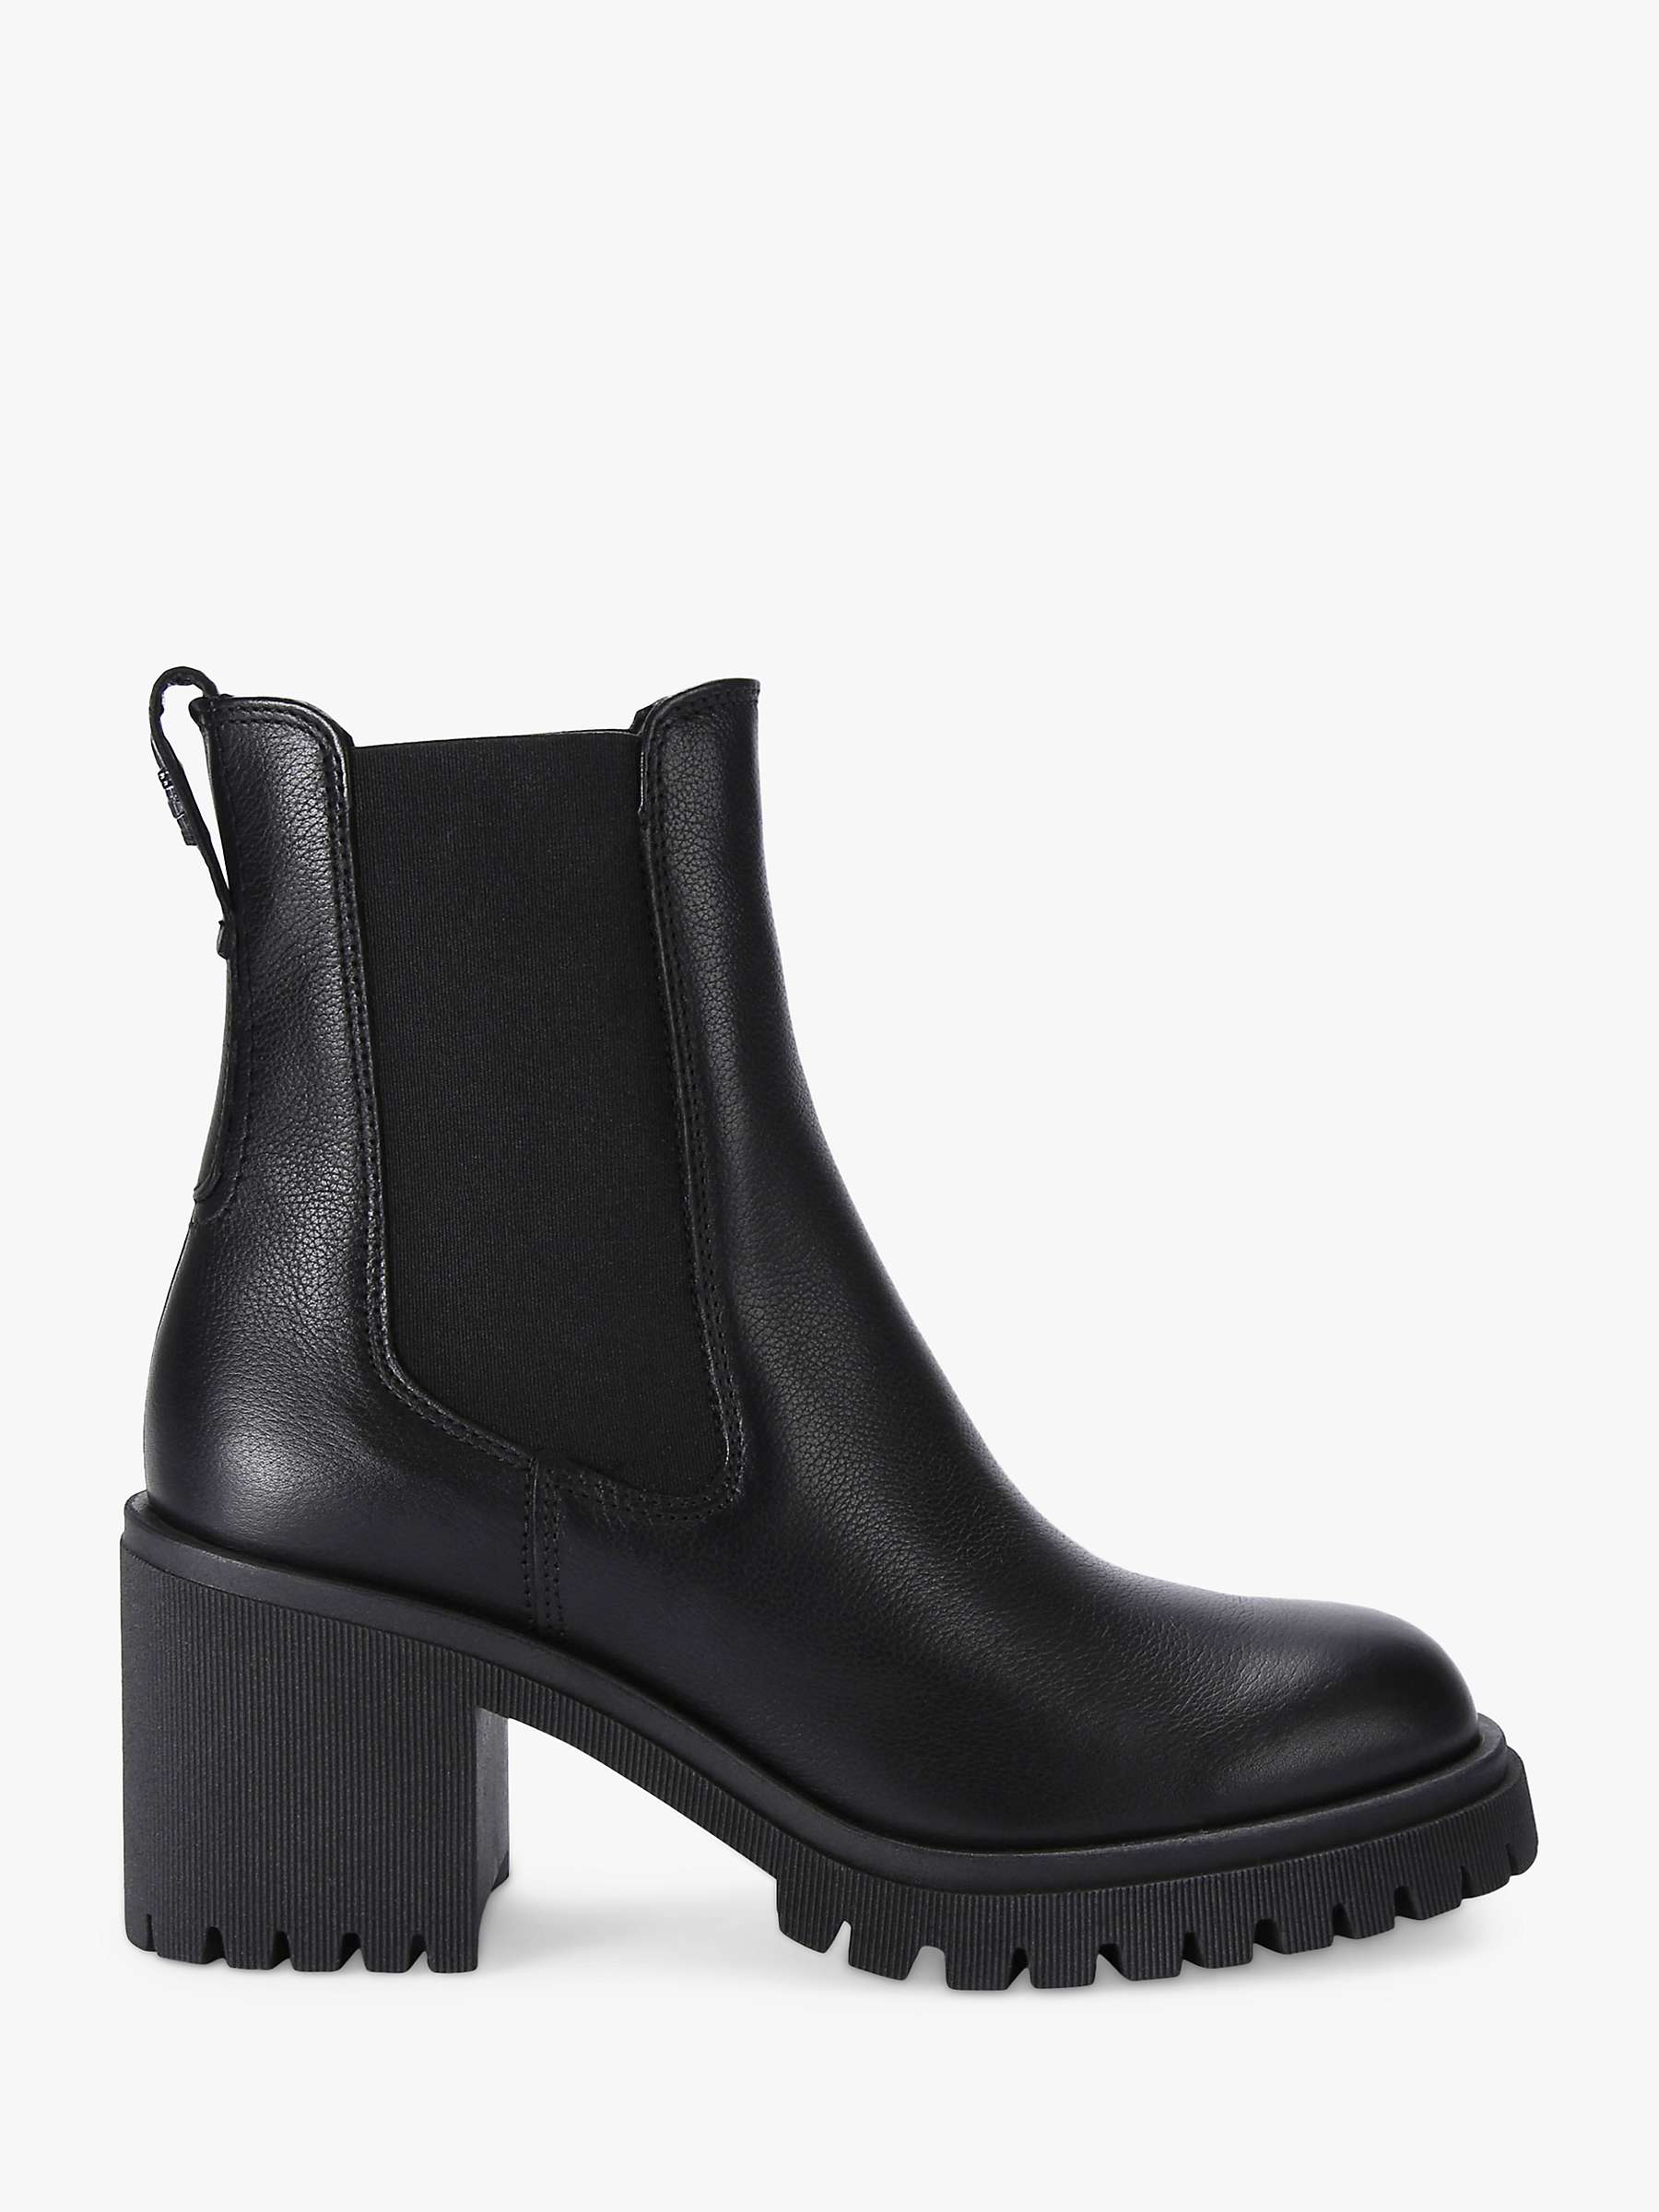 Buy Carvela Mega Leather Ankle Boots Online at johnlewis.com